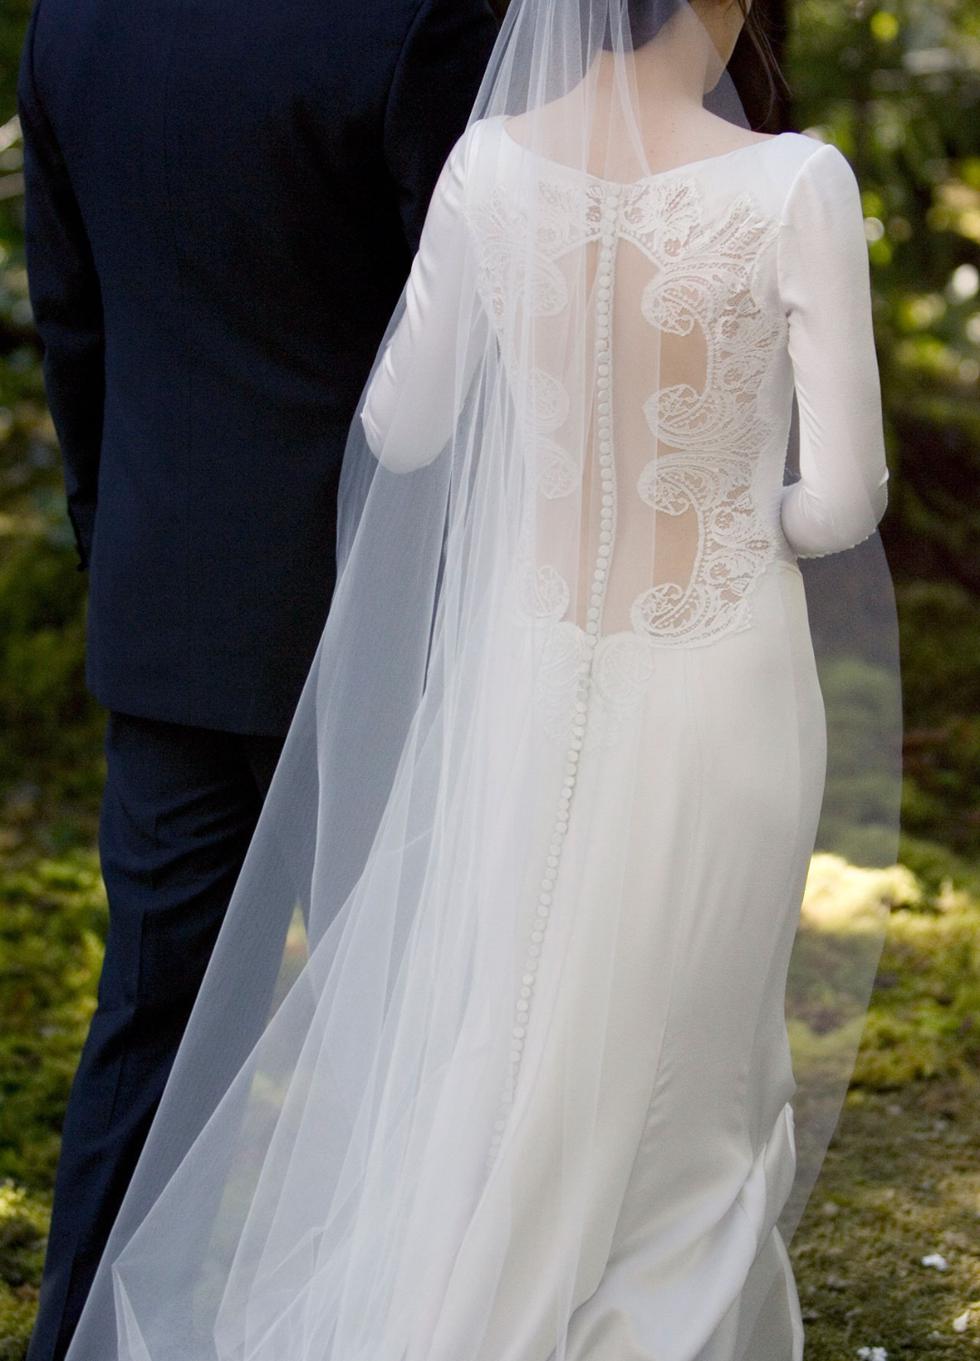 Tal vez te sorprenda, pero el vestido que lució Kristen Stewart en la piel de Bella Swan para la película “Amanecer” (2012) de “Crepúsculo”, una de las sagas más taquilleras de todos los tiempos, es un diseño de Carolina Herrera. En la historia, el impresionante vestido de novia de Bella para su boda con Edward era un diseño con mucho detalle, en especial en la abertura de la espalda grácilmente adornada con botones, lazos y bordados. Un vestido que se convirtió en todo un boom cuando luego de un tiempo salió al mercado. (Foto: Summit Entertainment)